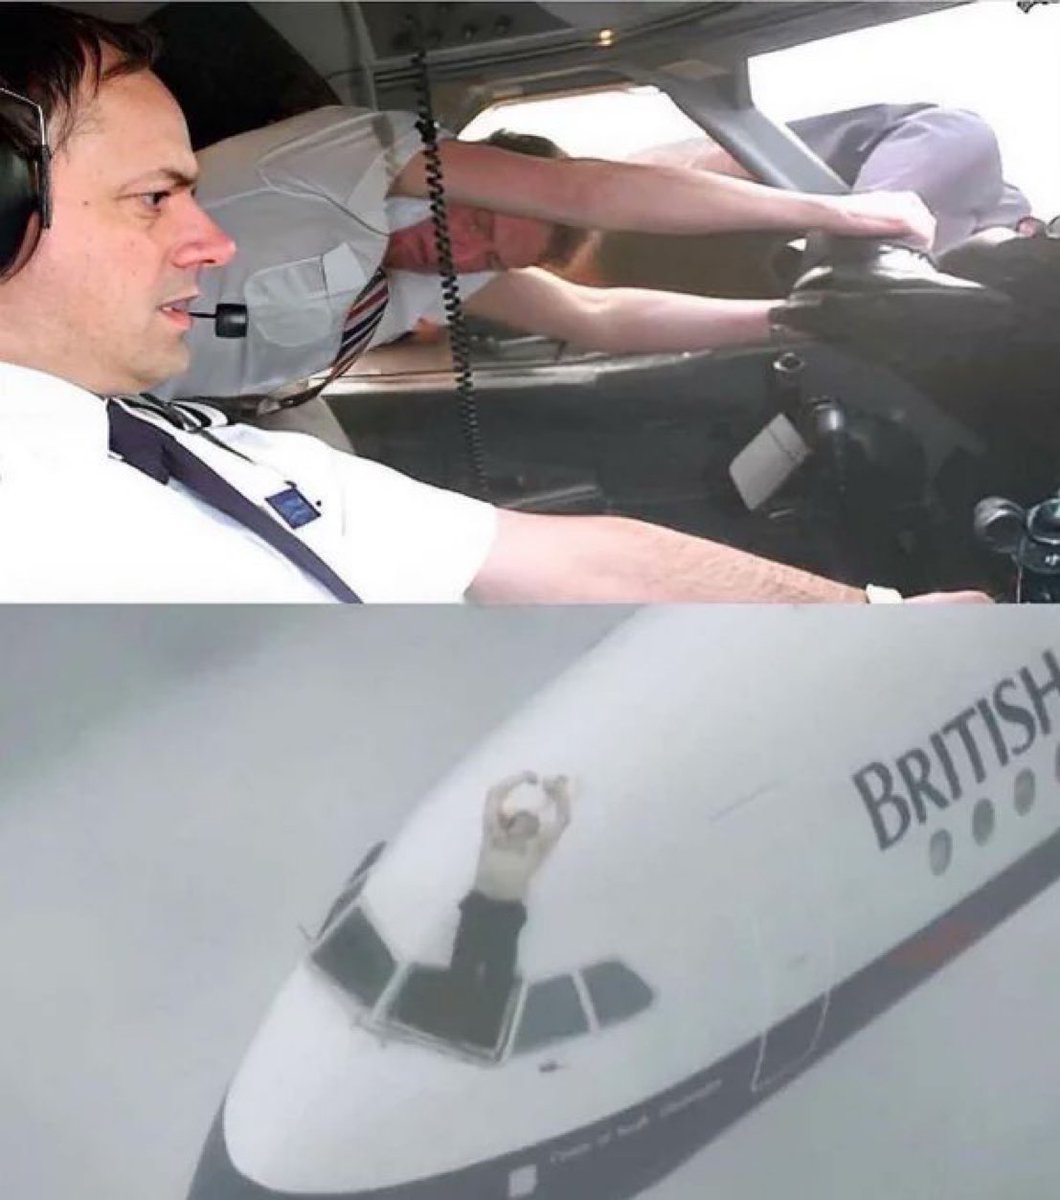 1990年ブリティッシュ・エアウェイズ5390便のフロントガラスが高度17,000フィートで剥がれ落ち
幸運なことにちょうどそのとき客室乗務員のナイジェル・オグデンがコックピットに向かう途中でした彼は機長をつかみ副操縦士が緊急着陸を試みる間20分以上その状態を維持することができました😱🤔🙏